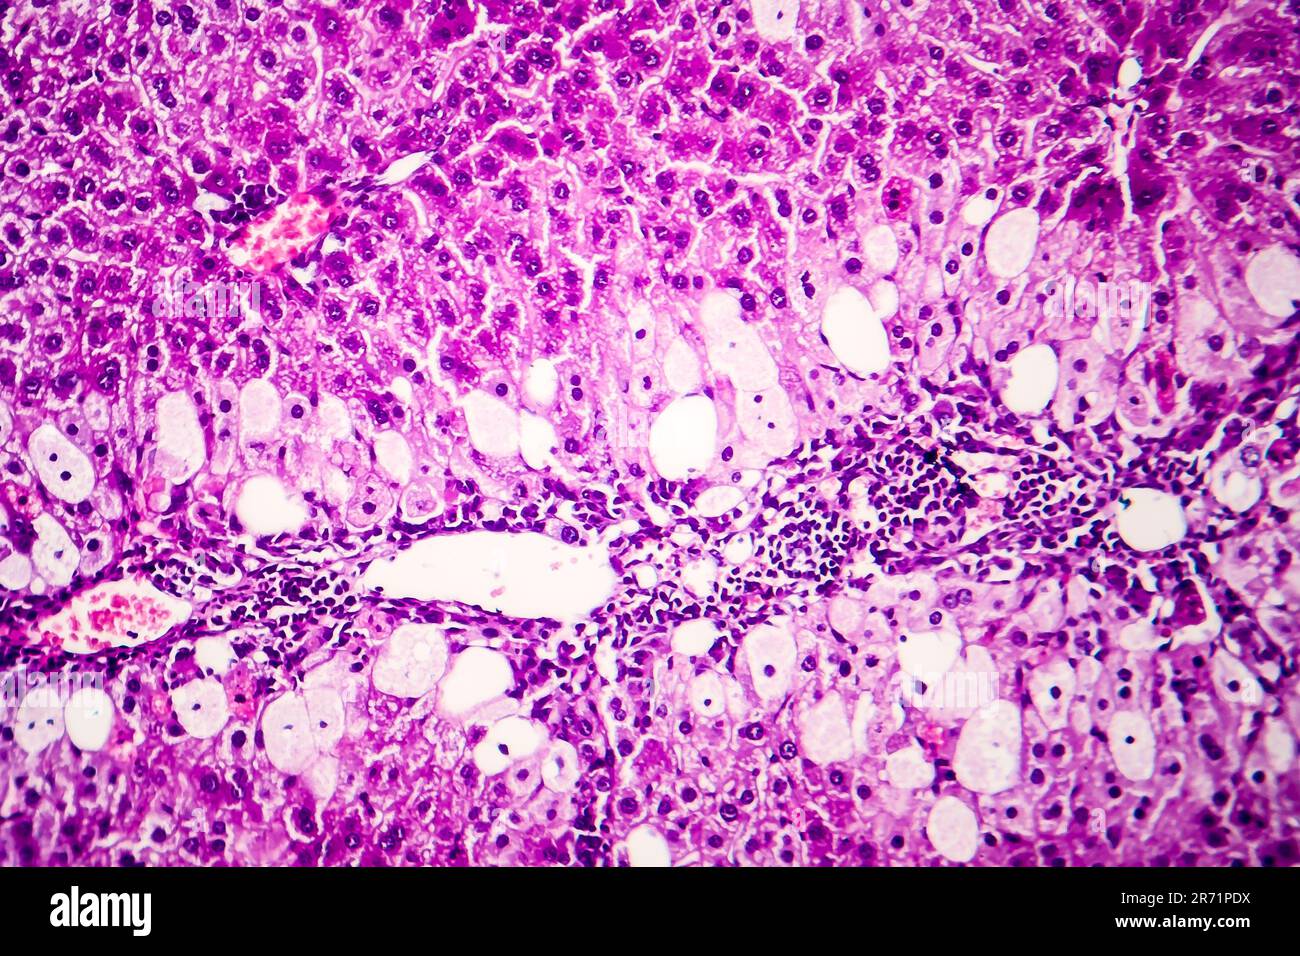 Histopathologie de l'hépatite aiguë, micrographe léger, photo sous microscope Banque D'Images